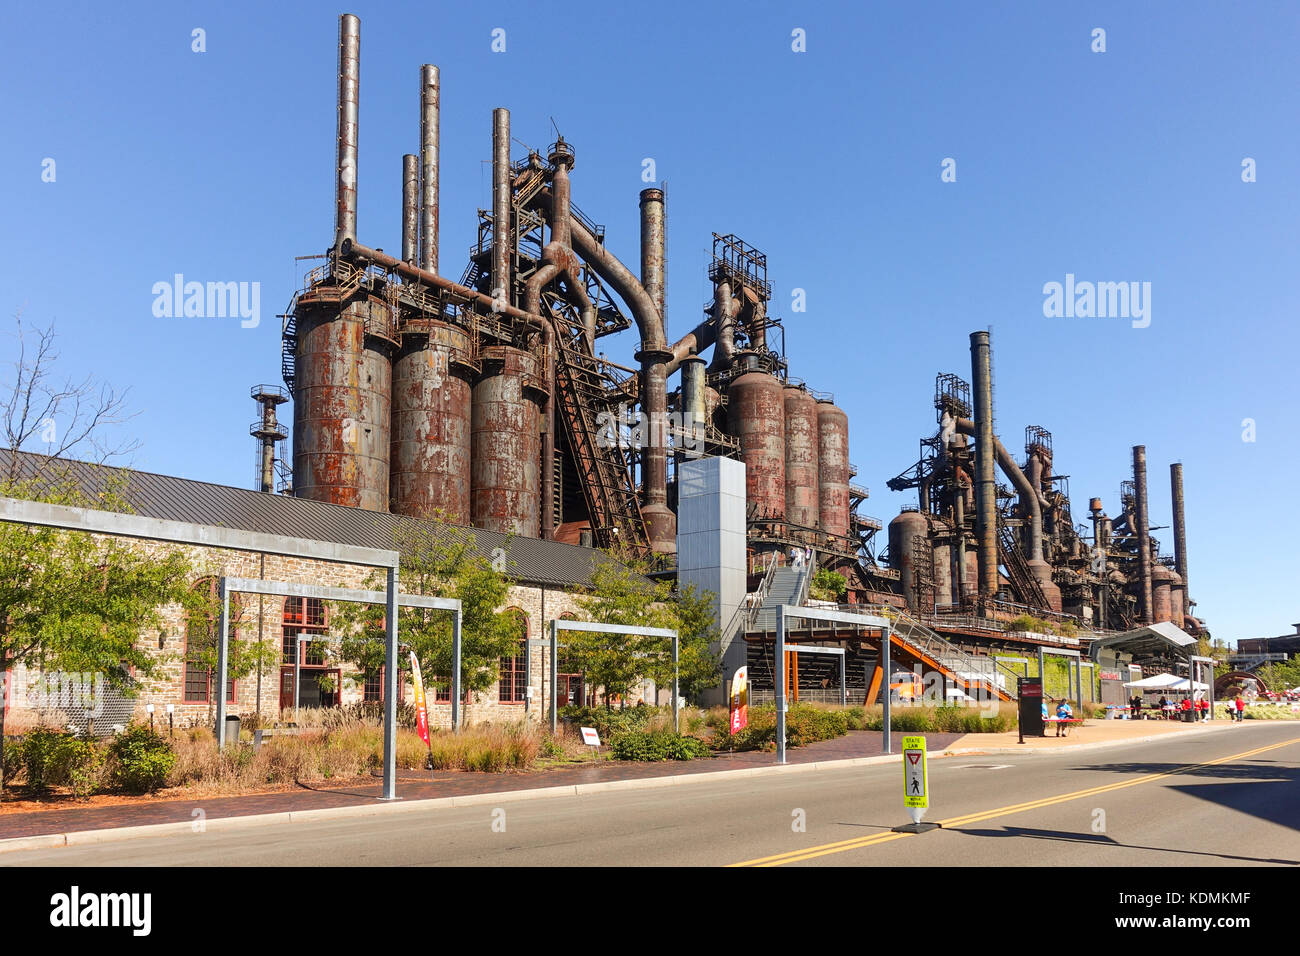 Bethlehem Steel Plant usine, Steelstacks, Texas, Abandonné, reste la rouille des hauts fourneaux a fermé ses portes en 1995, maintenant arts and events center,USA. Banque D'Images